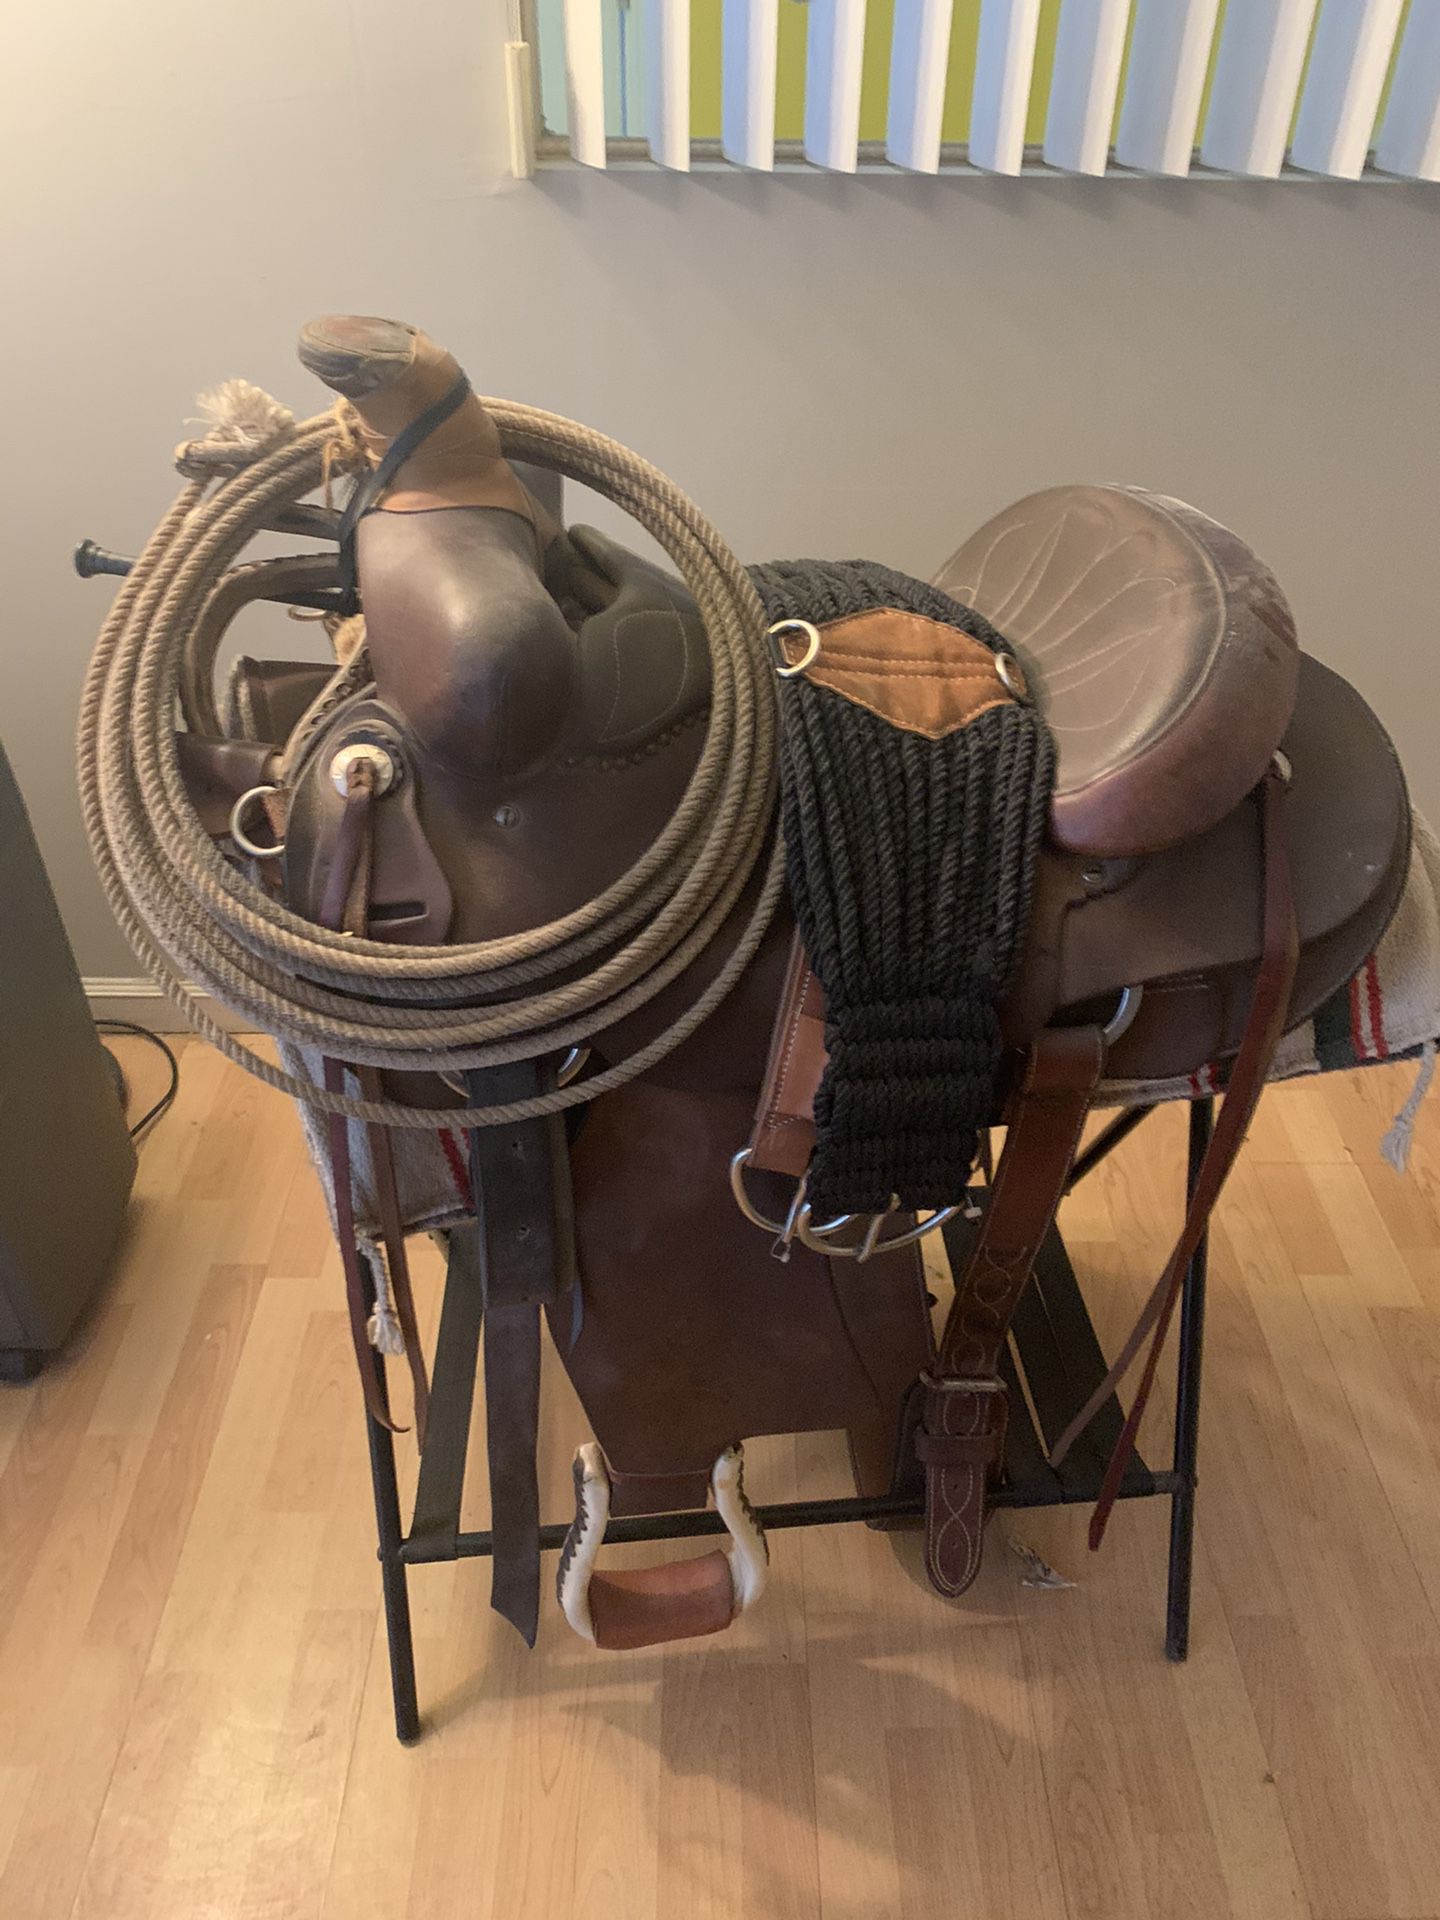 Saddle horse saddle